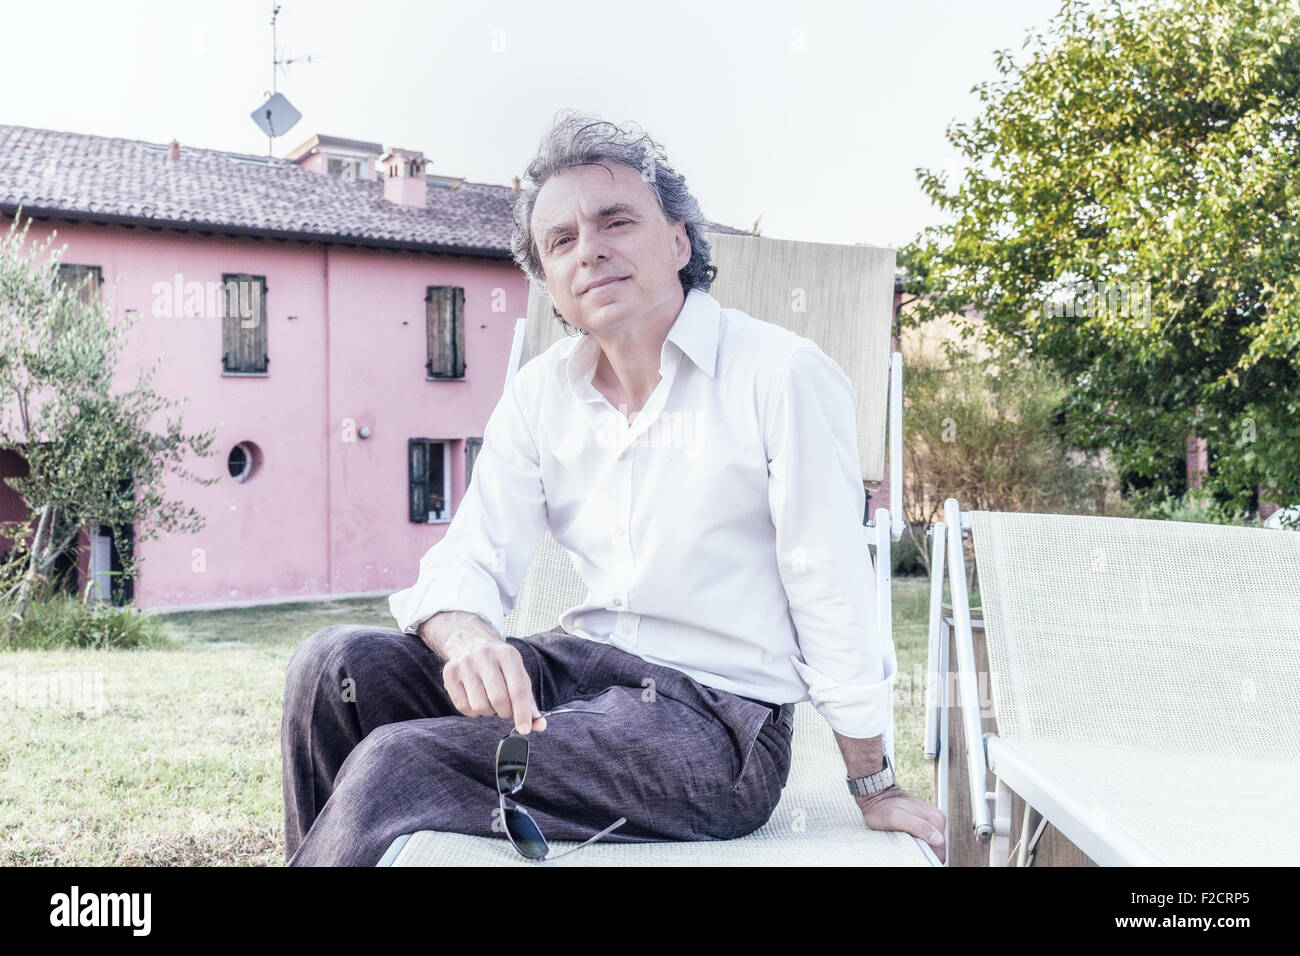 faszinierende wohlhabenden Gentleman von vierzig aus Stadt ruht auf einem Liegestuhl im Garten von einem roten Landhaus in Italien Stockfoto